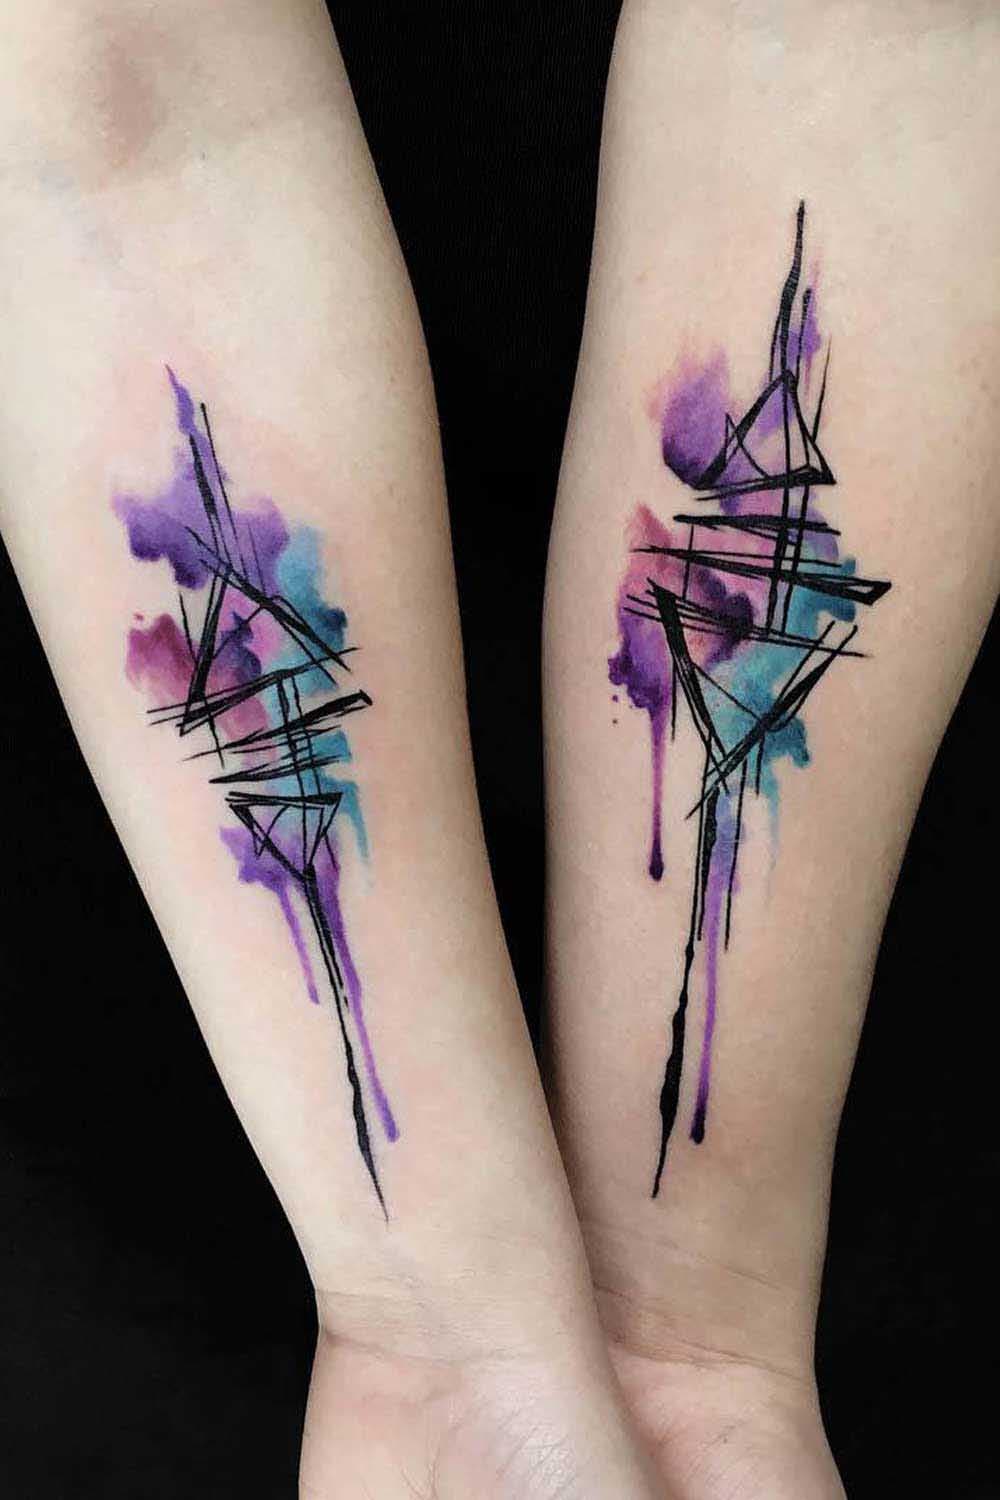 Deux tatouages similaires qui se distinguent par la touche d’aquarelle